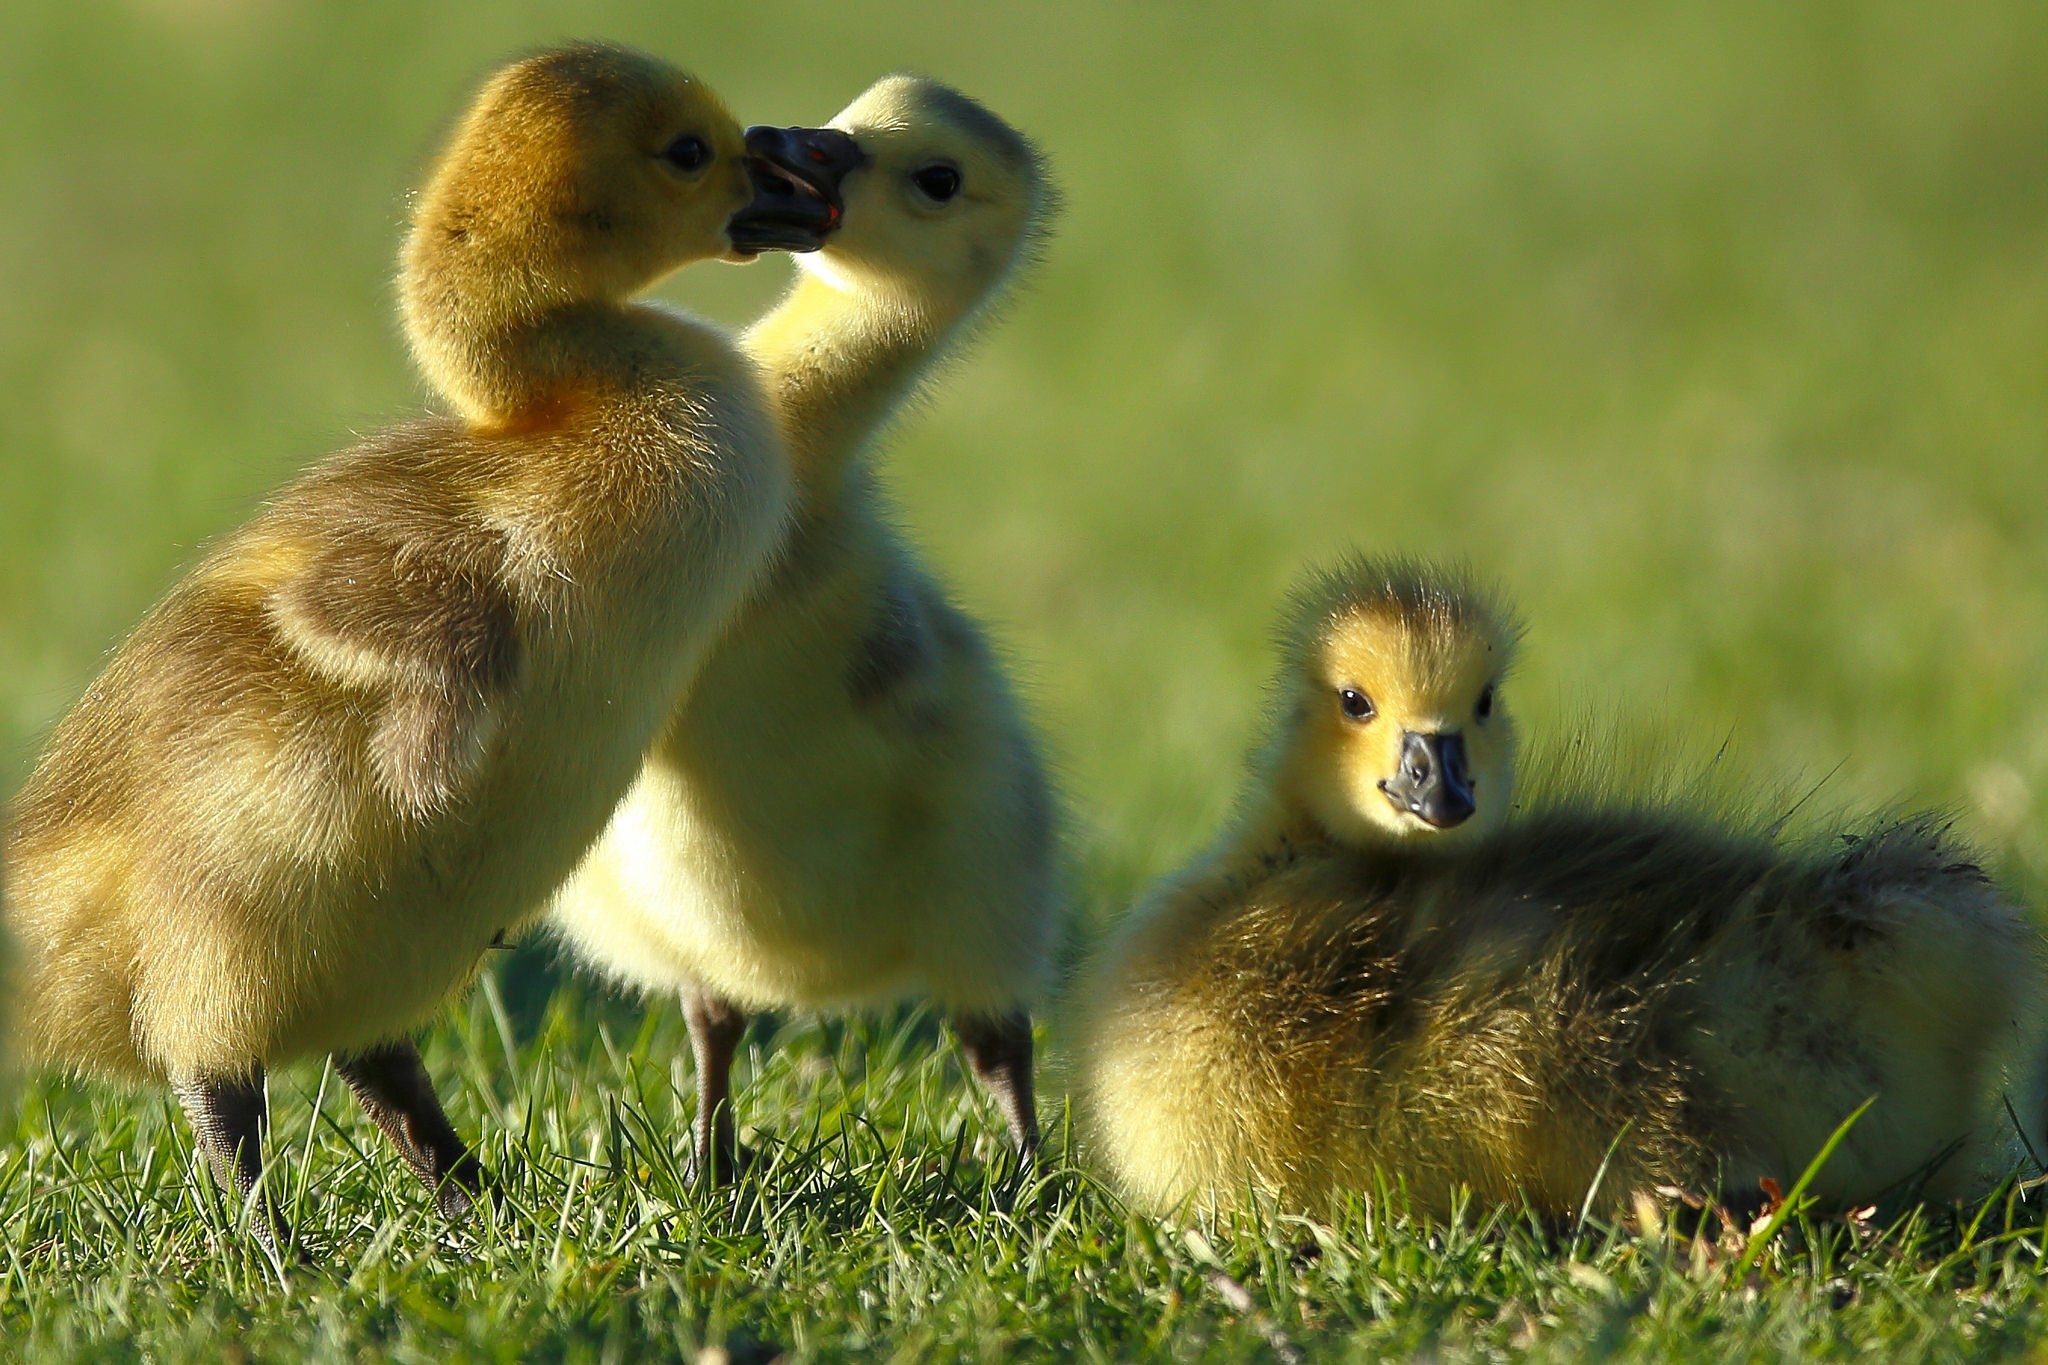 Canada Goose, Goslings, Cute baby geese, HD wallpapers, 2050x1370 HD Desktop